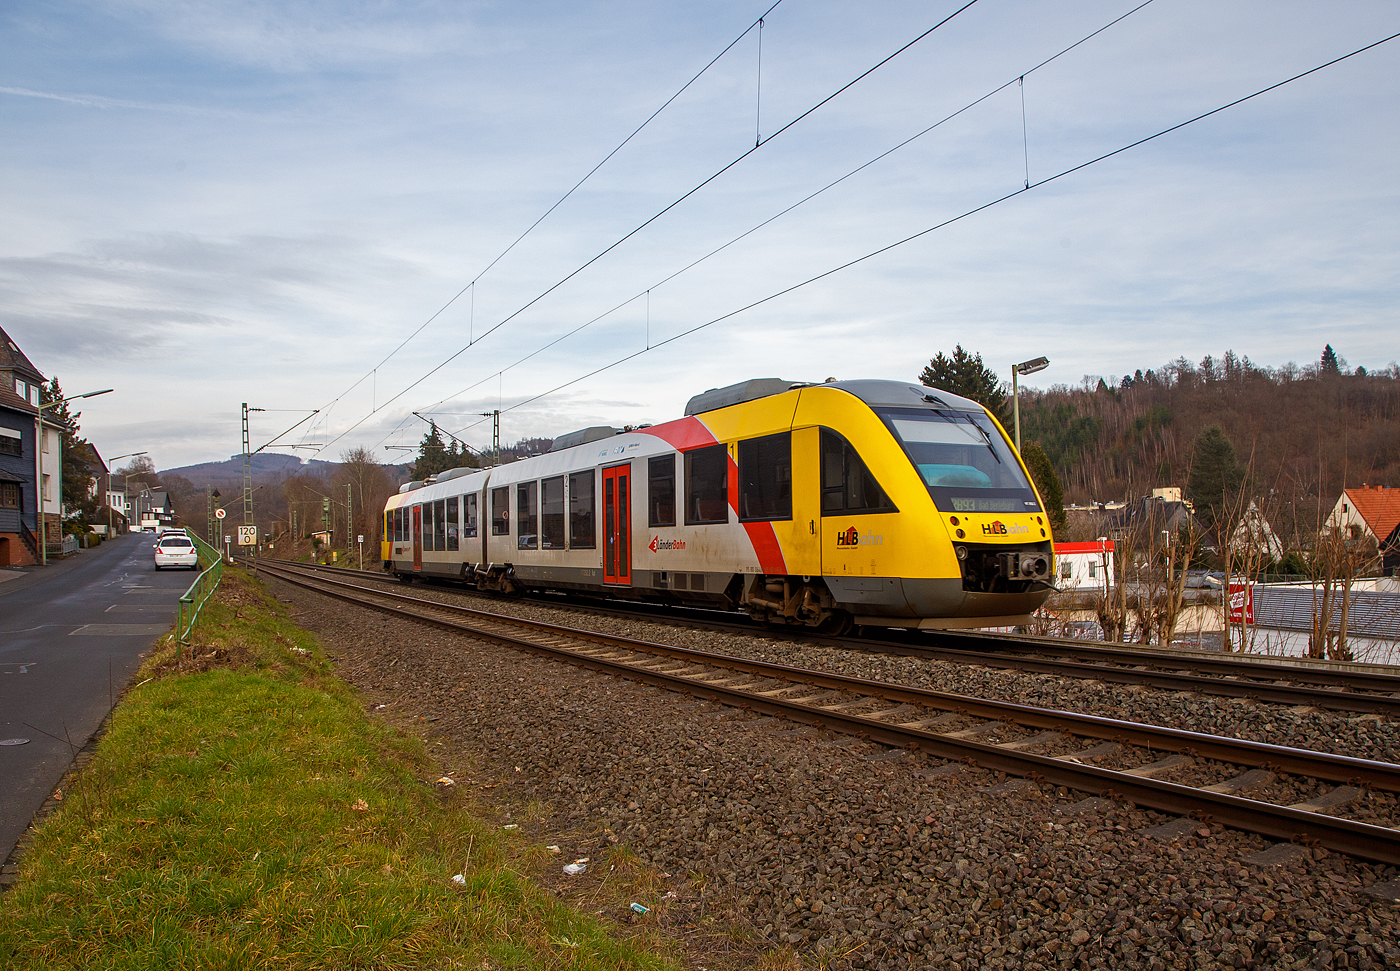 Der VT 252 (95 80 0648 152-6 D-HEB / 95 80 0648 652-5 D-HEB), ein Alstom Coradia LINT 41 der HLB (Hessische Landesbahn), ex Vectus VT 252, fährt am 22.02.2023, als RB 93  Rothaarbahn  (Betzdorf - Siegen - Kreuztal - Erndtebrück - Bad Berleburg), von Kirchen (Sieg) weiter in Richtung Siegen.

Einen lieben Gruß an den netten Tf zurück.

Der Alstom Coradia LINT 41 wurde 2004 von der ALSTOM Transport Deutschland GmbH (vormals LHB - Linke-Hofmann-Busch GmbH) in Salzgitter-Watenstedt unter der Fabriknummer 1188-002 gebaut und an die vectus Verkehrsgesellschaft mbH geliefert, mit dem Fahrplanwechsel am 14.12.2014 wurden alle Fahrzeuge der vectus nun Eigentum der HLB.
